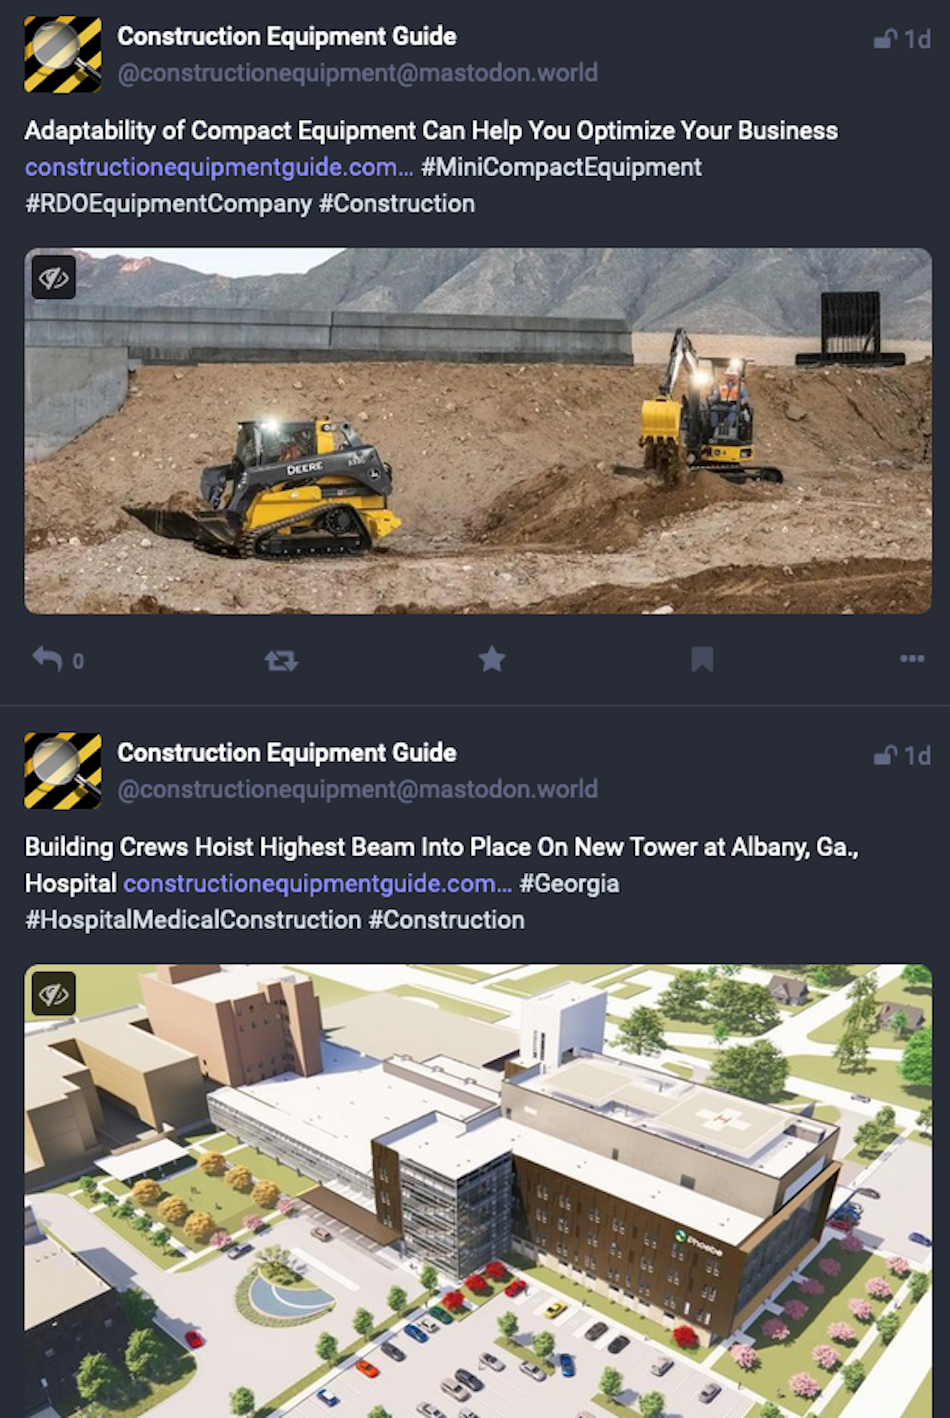 社群媒體平台 Mastodon 上的兩則貼文顯示產業新聞媒體《建築設備指南》宣傳其網站上的新聞報導。